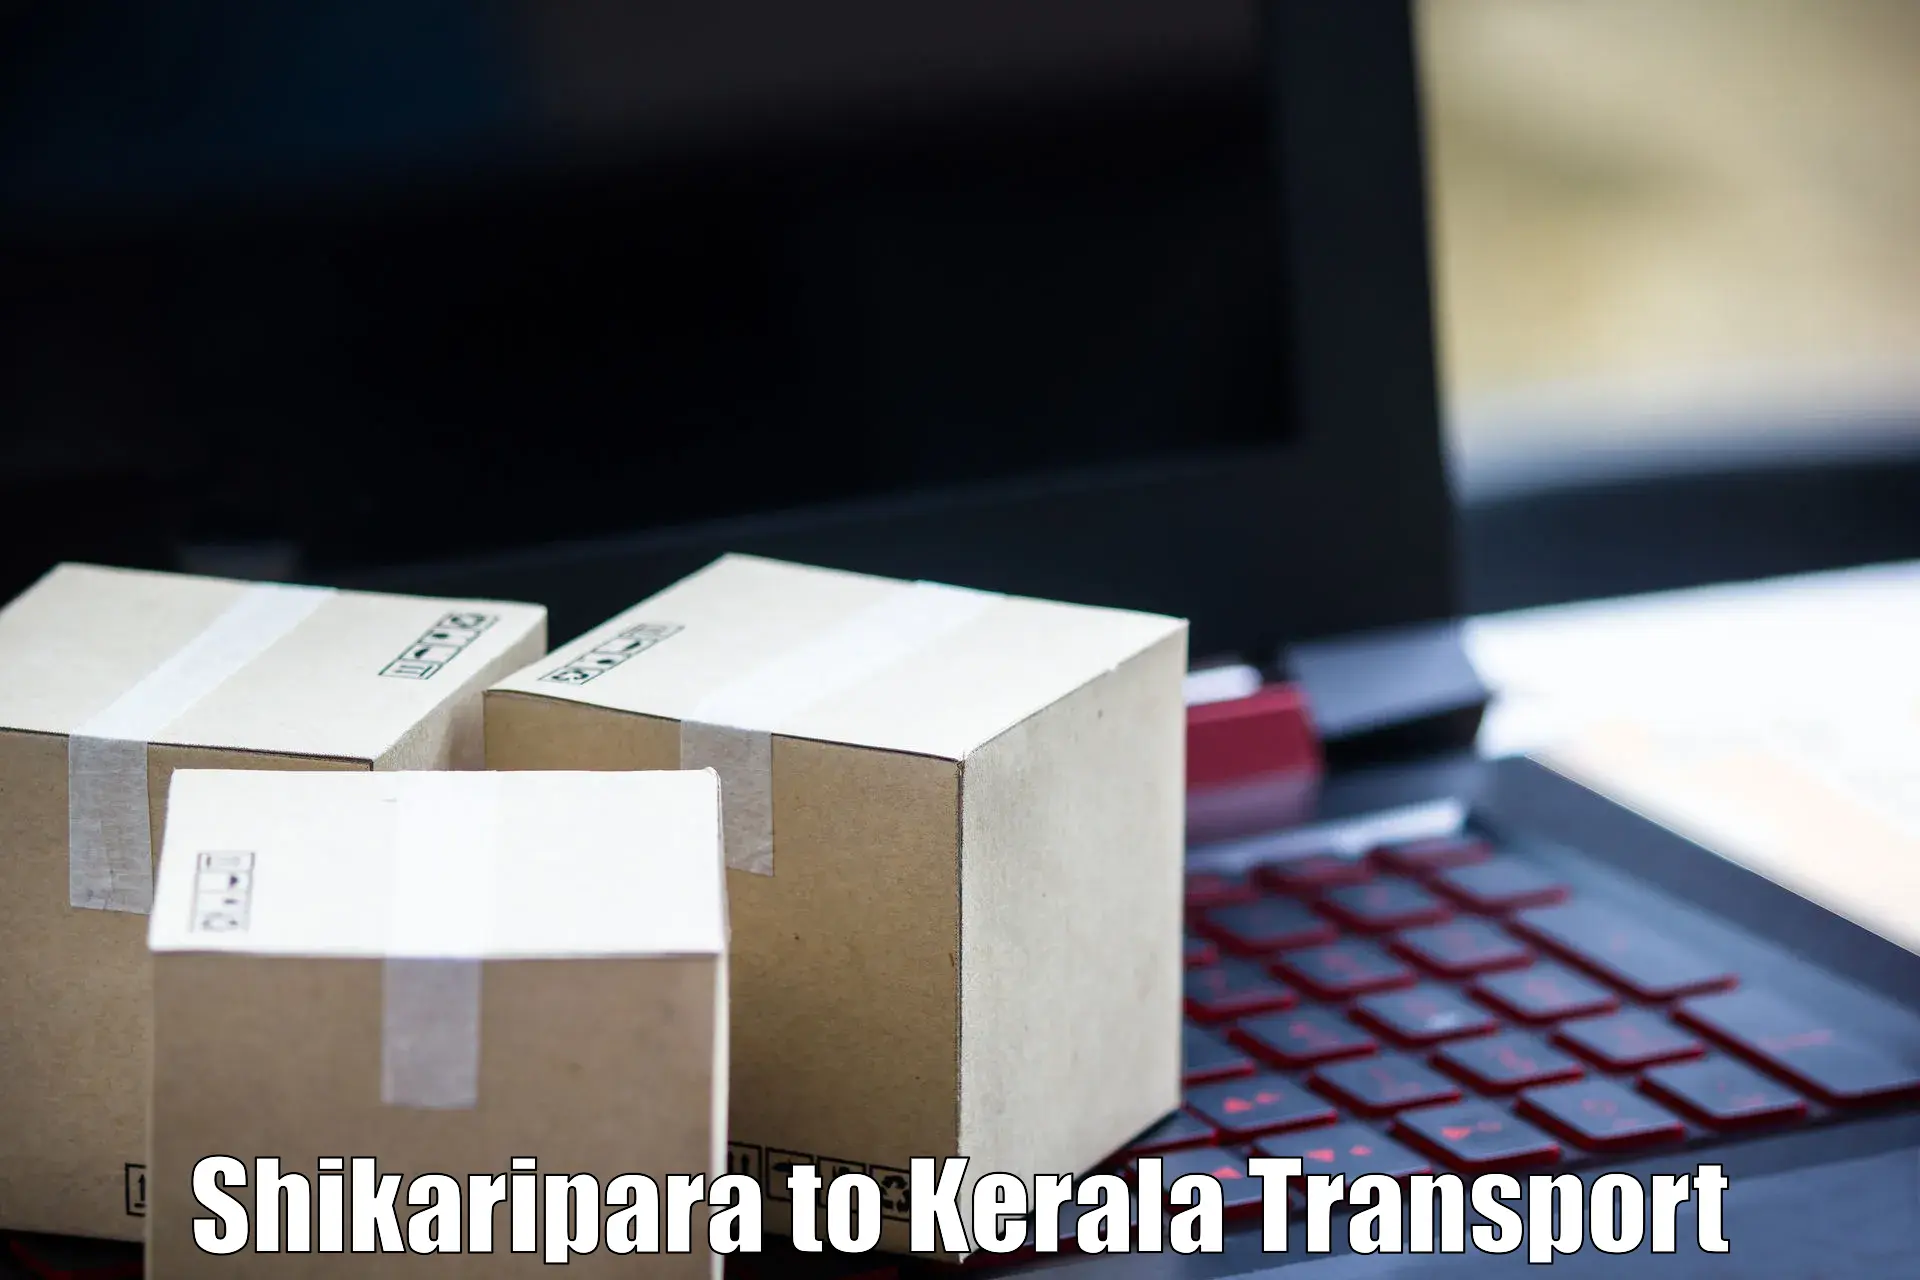 Transport bike from one state to another Shikaripara to Kannapuram